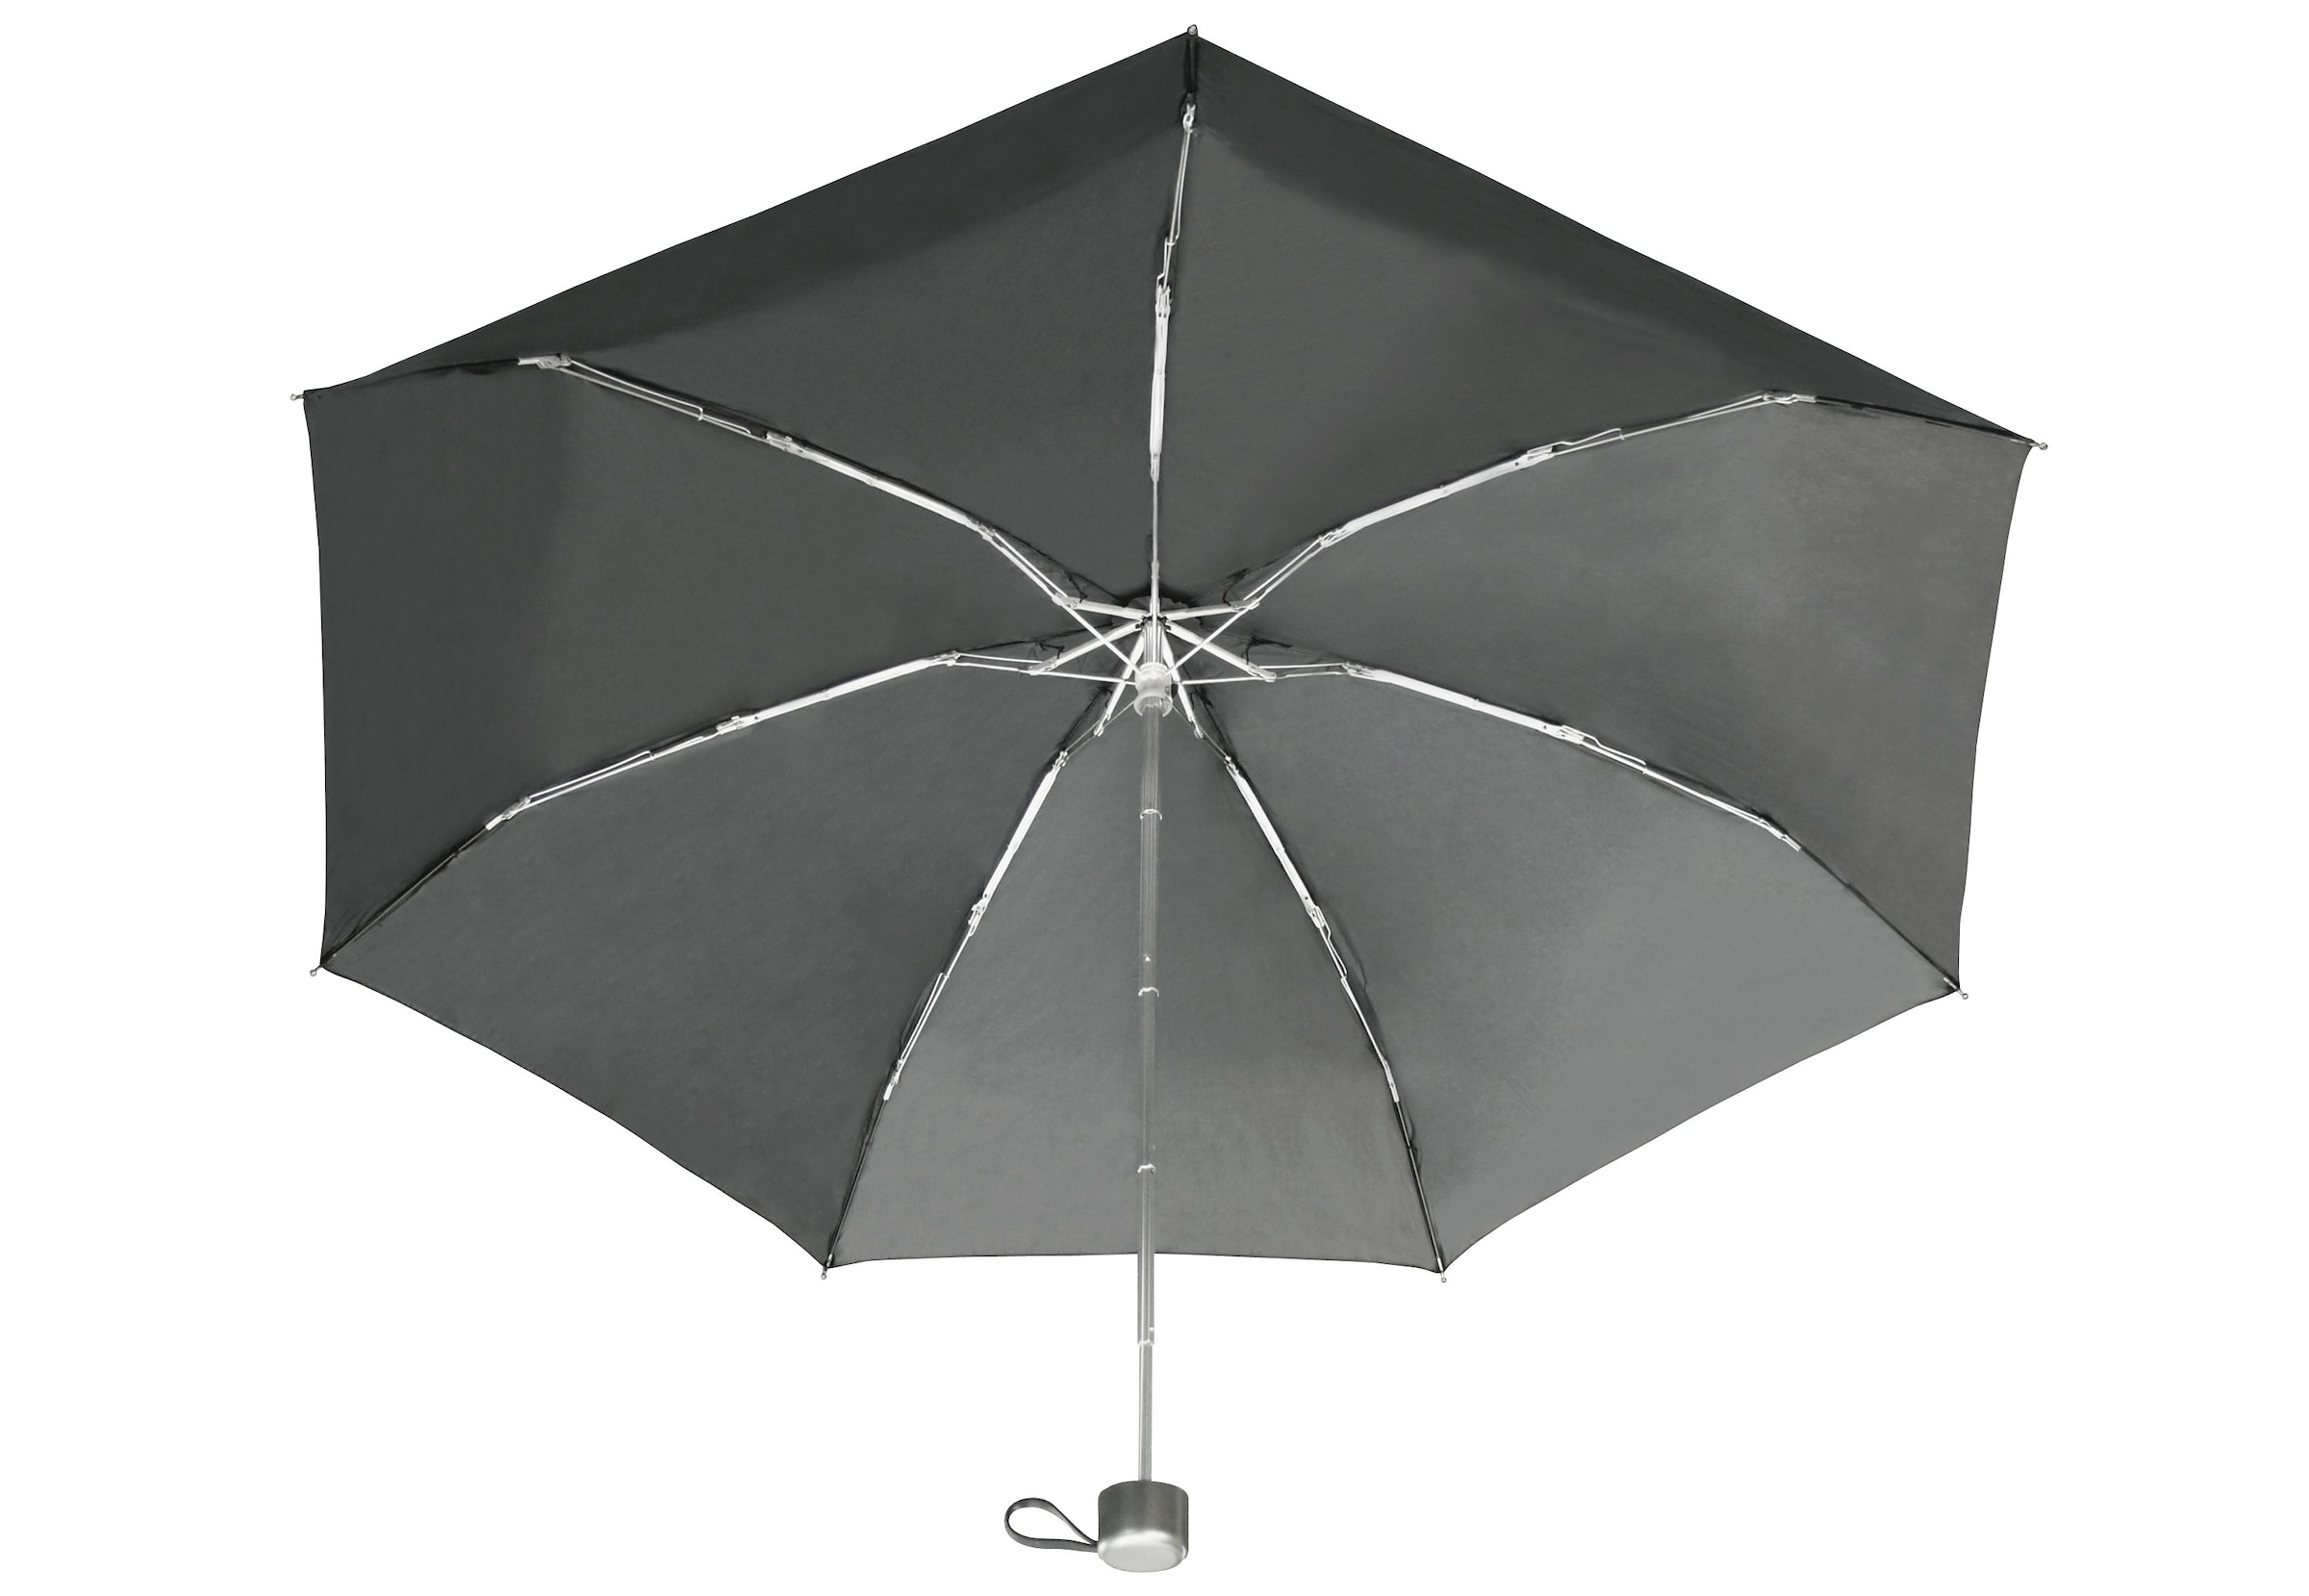 EuroSCHIRM® Taschenregenschirm jetzt »Der Riese, schwarz« bestellen kleine